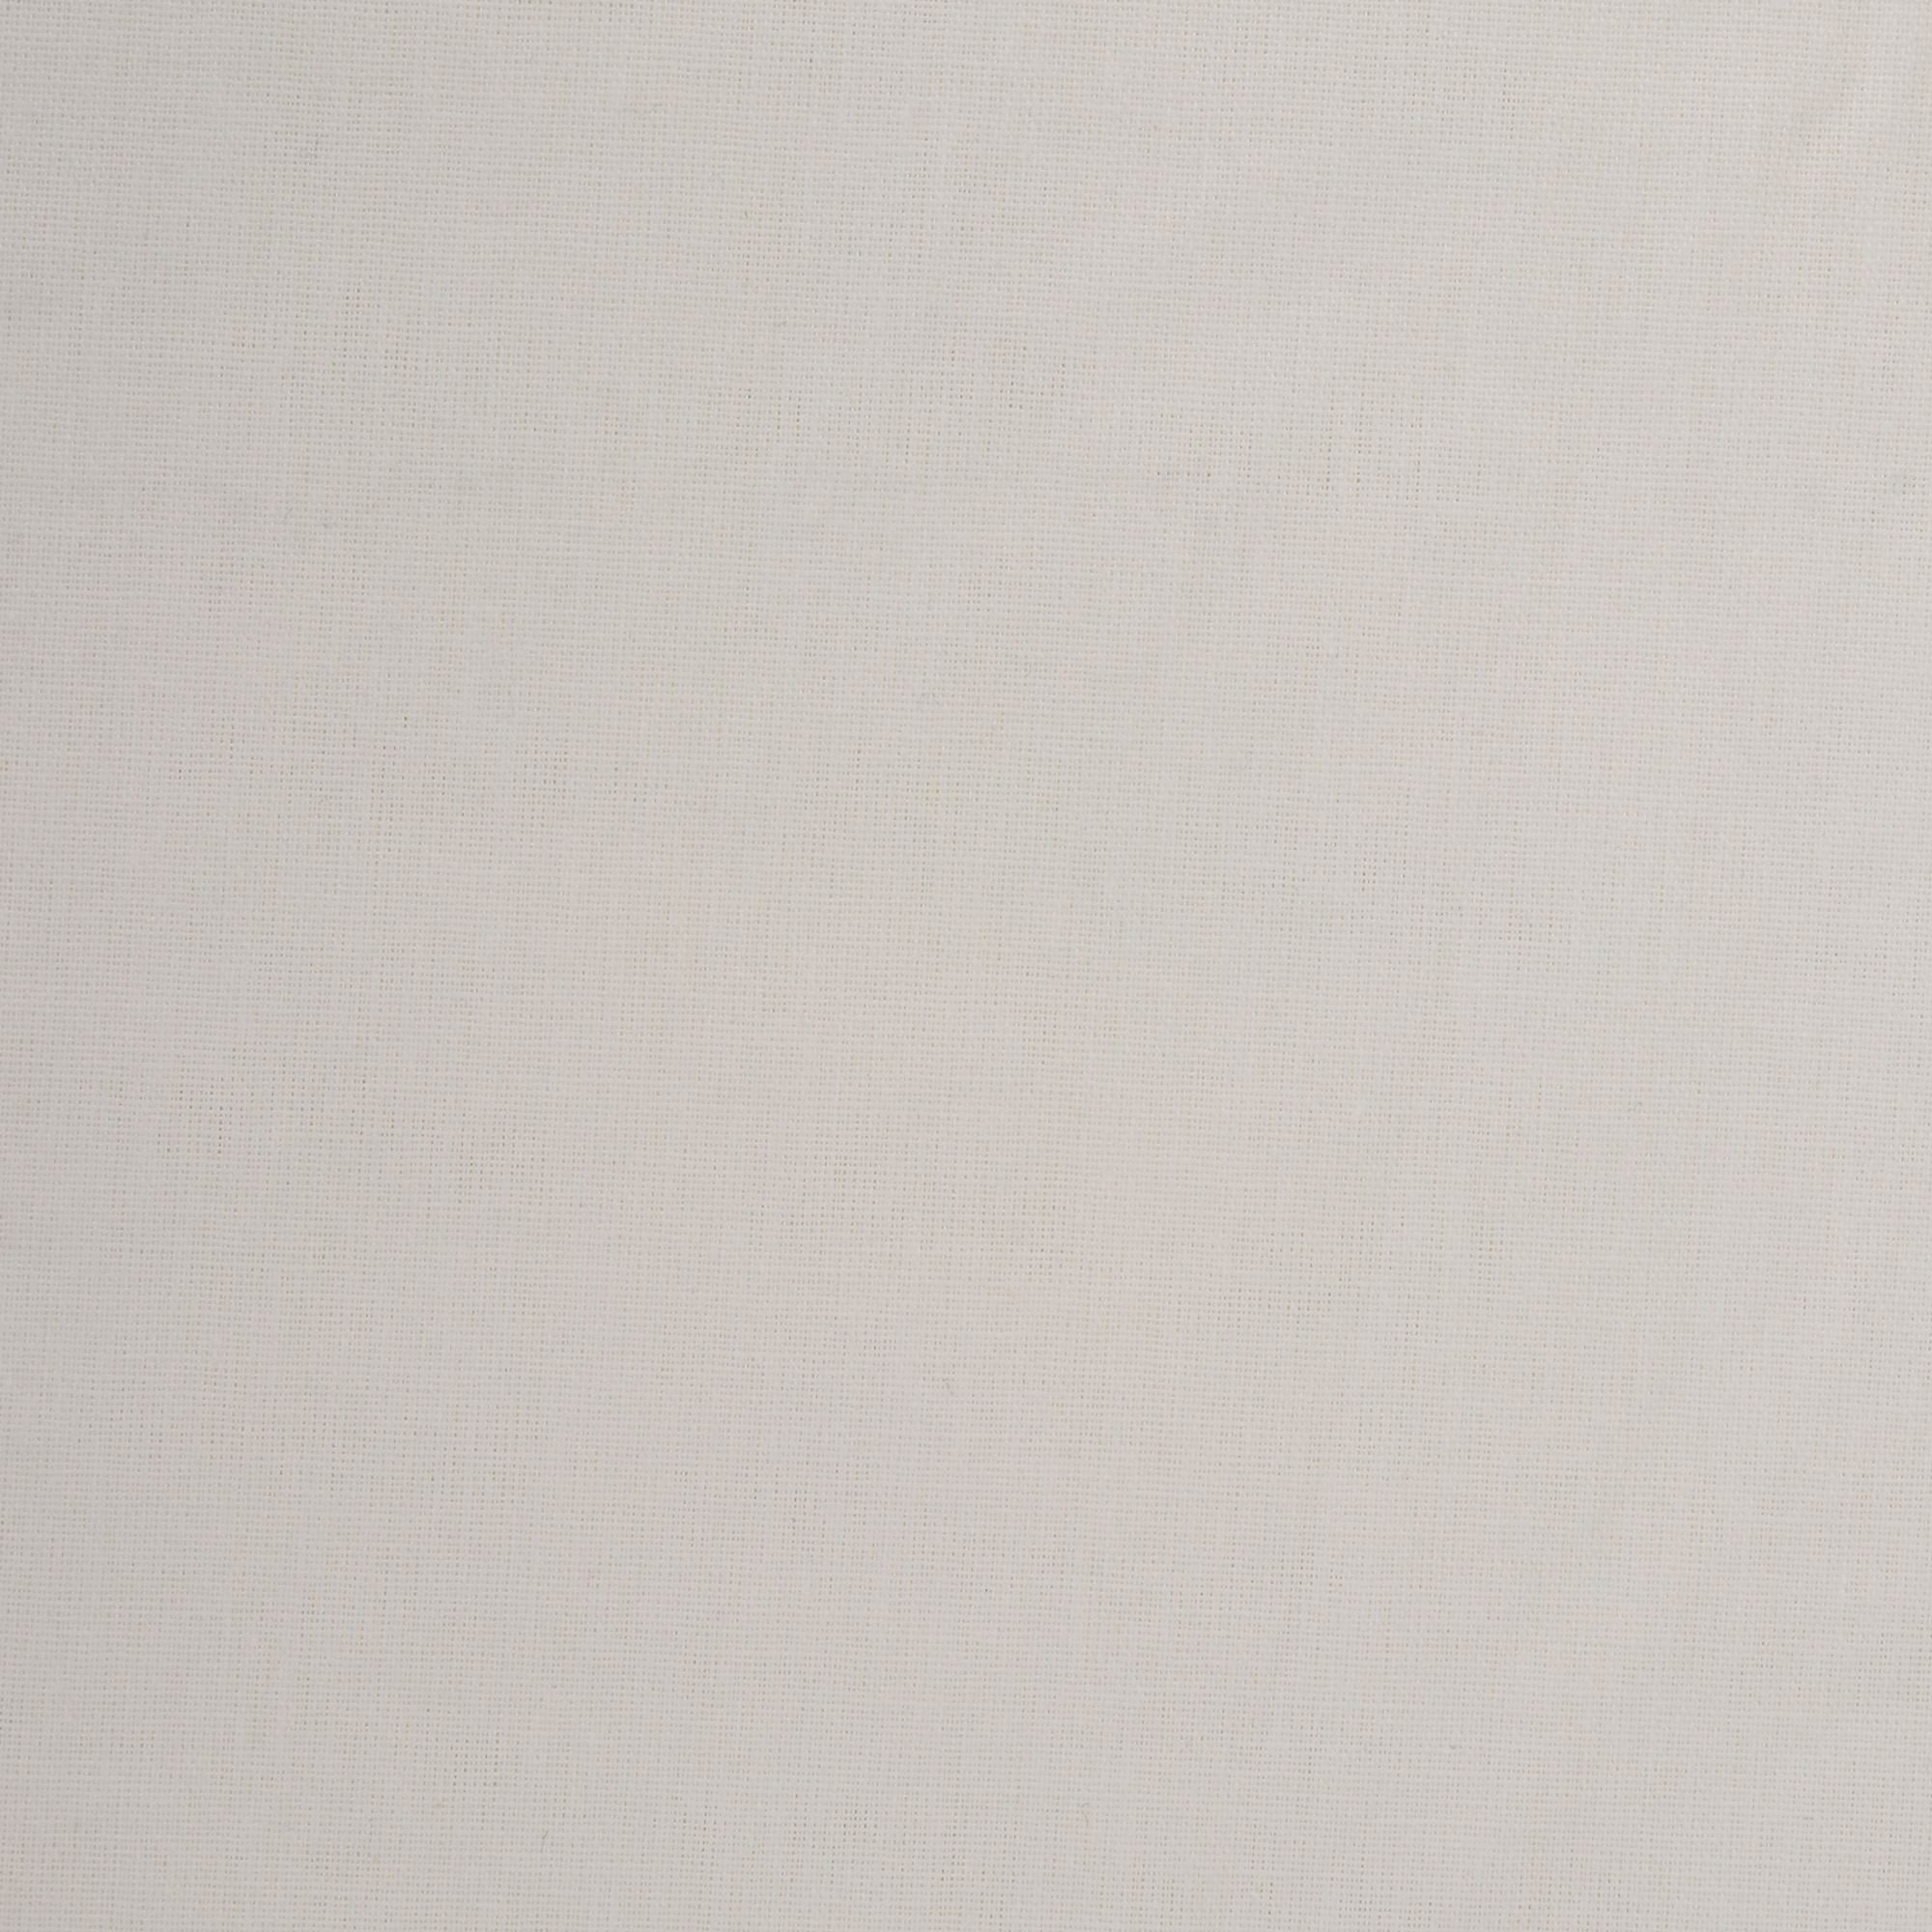 Комплект постельного белья La Besse Ранфорс кремовый Кинг сайз, размер Кинг сайз - фото 4